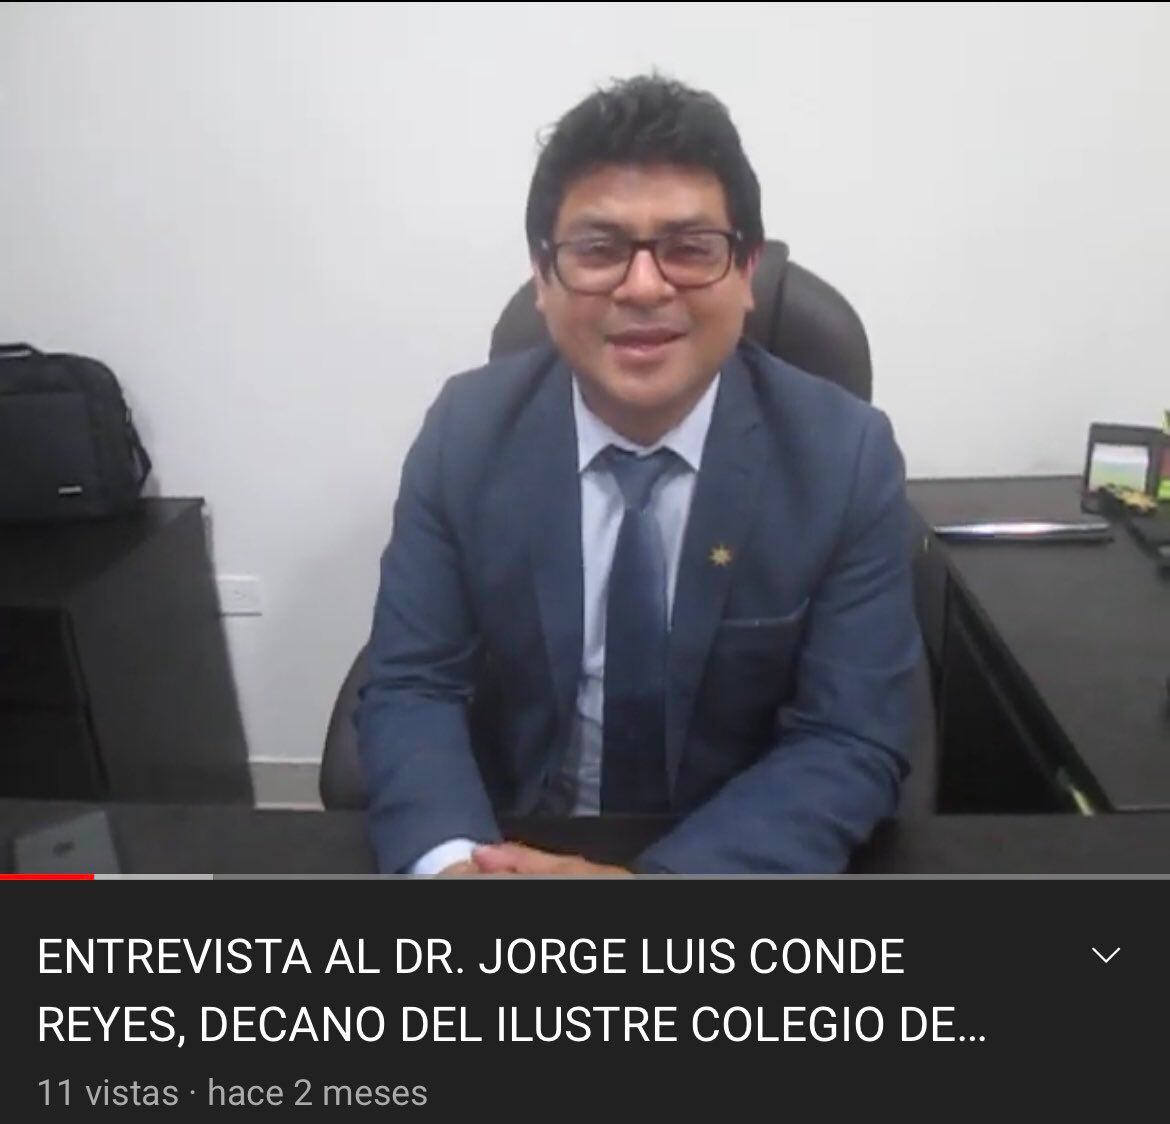 Jorge Luis Conde Reyes es el actual presidente del Colegio de Abogados de Huaura. | YouTube